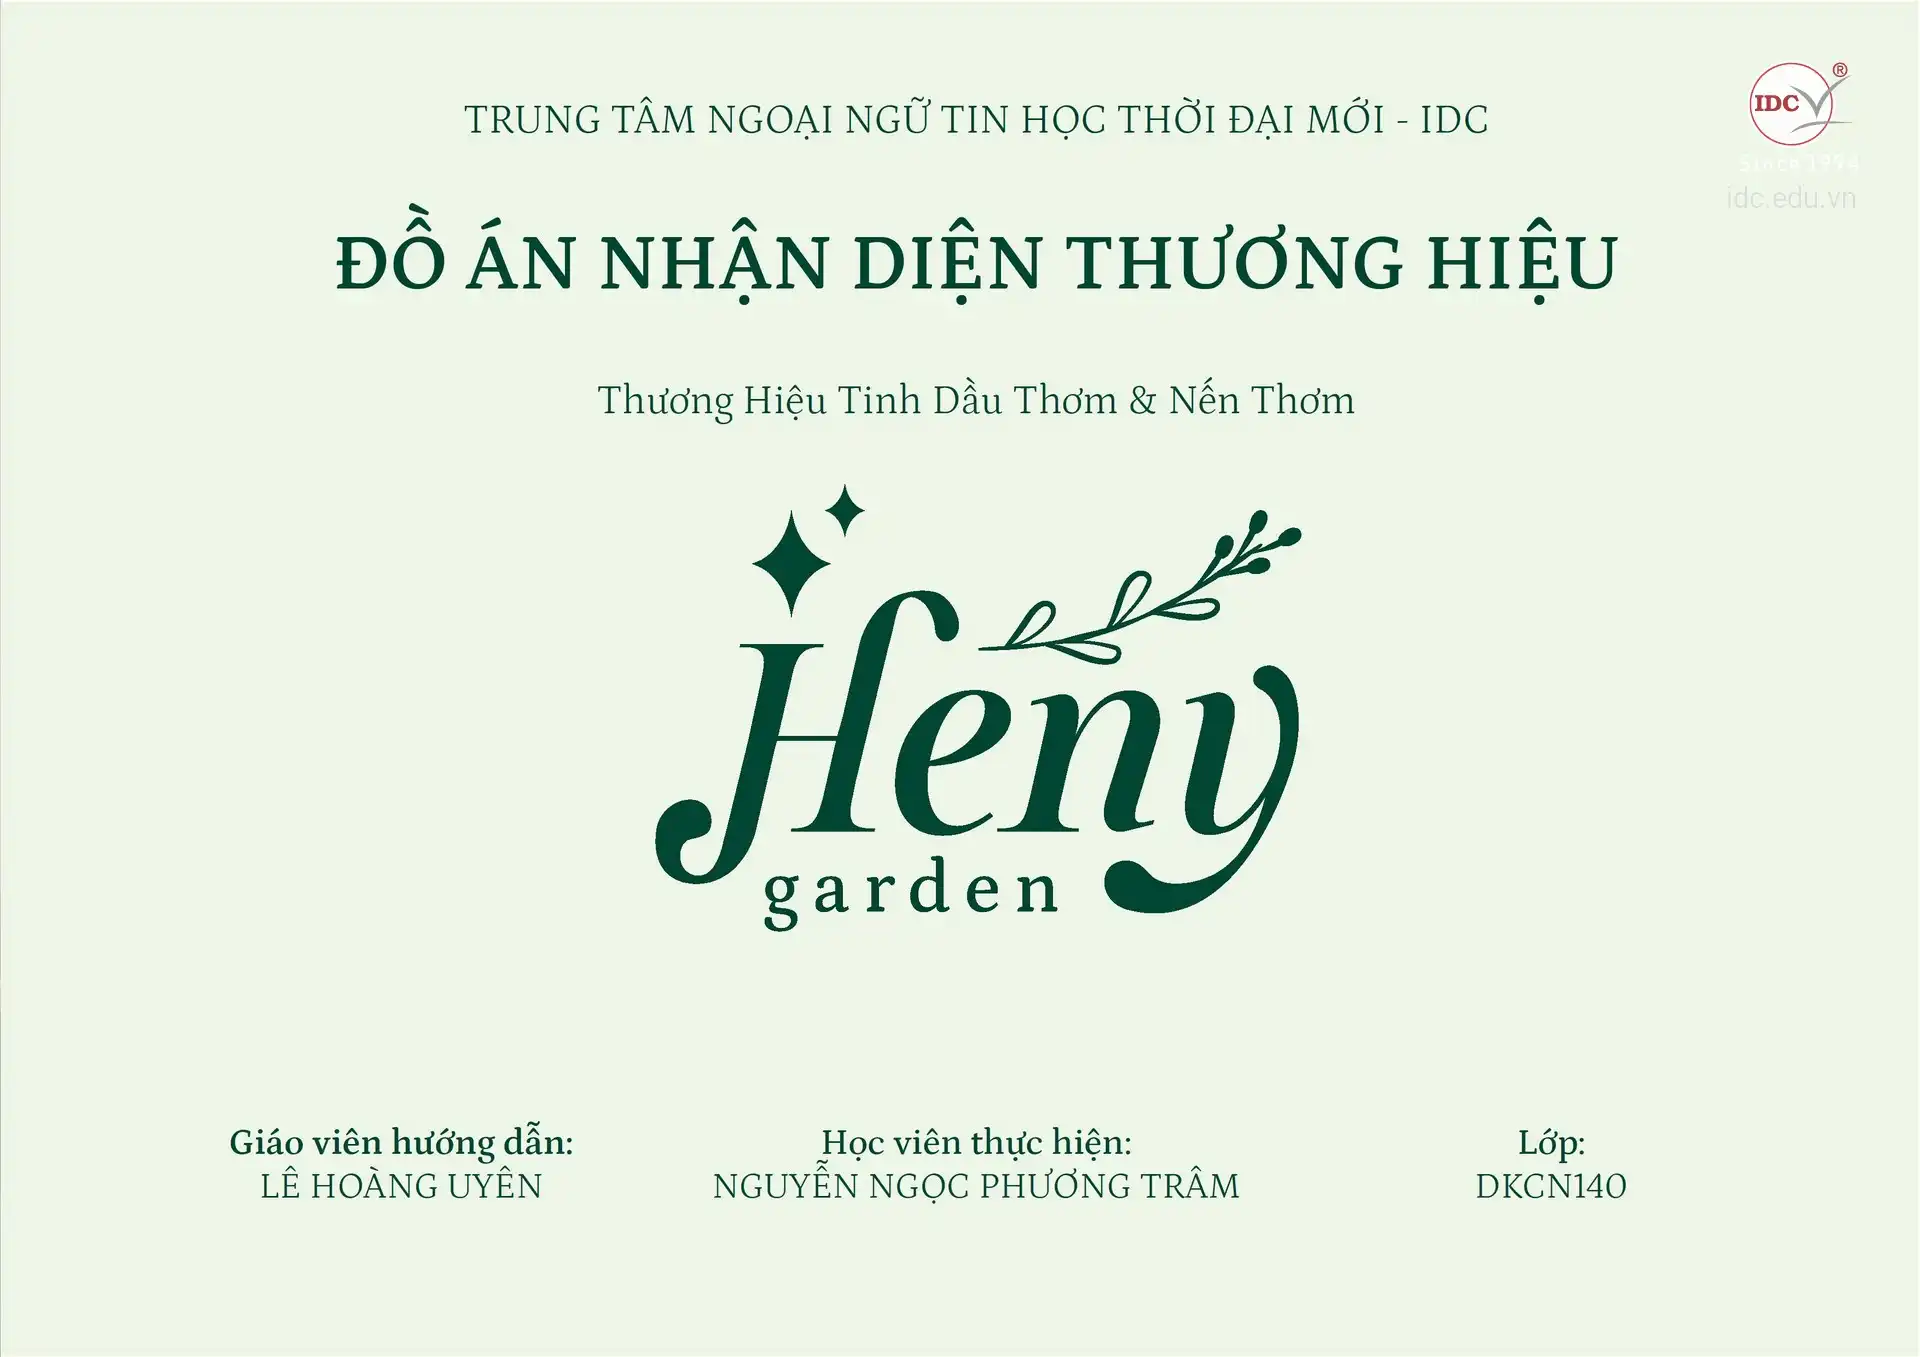 Đồ án thiết kế đồ họa – HV Nguyễn Ngọc Phương Trâm – DKCN141